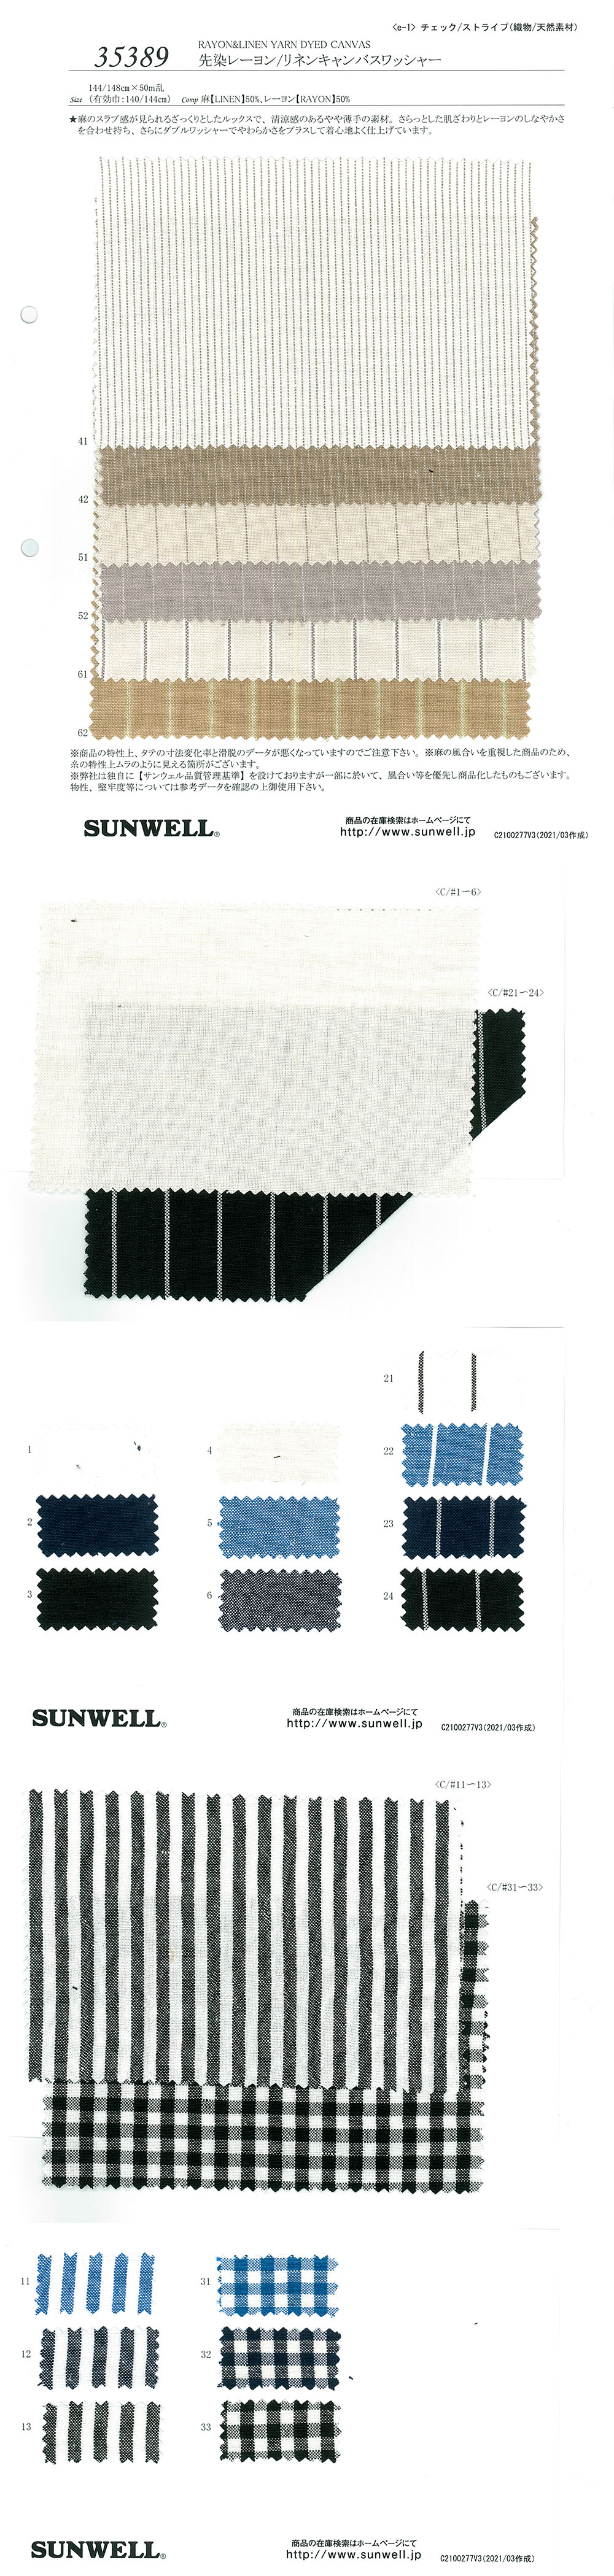 35389 Processamento De Lavadora De Lona De Linho/rayon Tingido De Fios[Têxtil / Tecido] SUNWELL